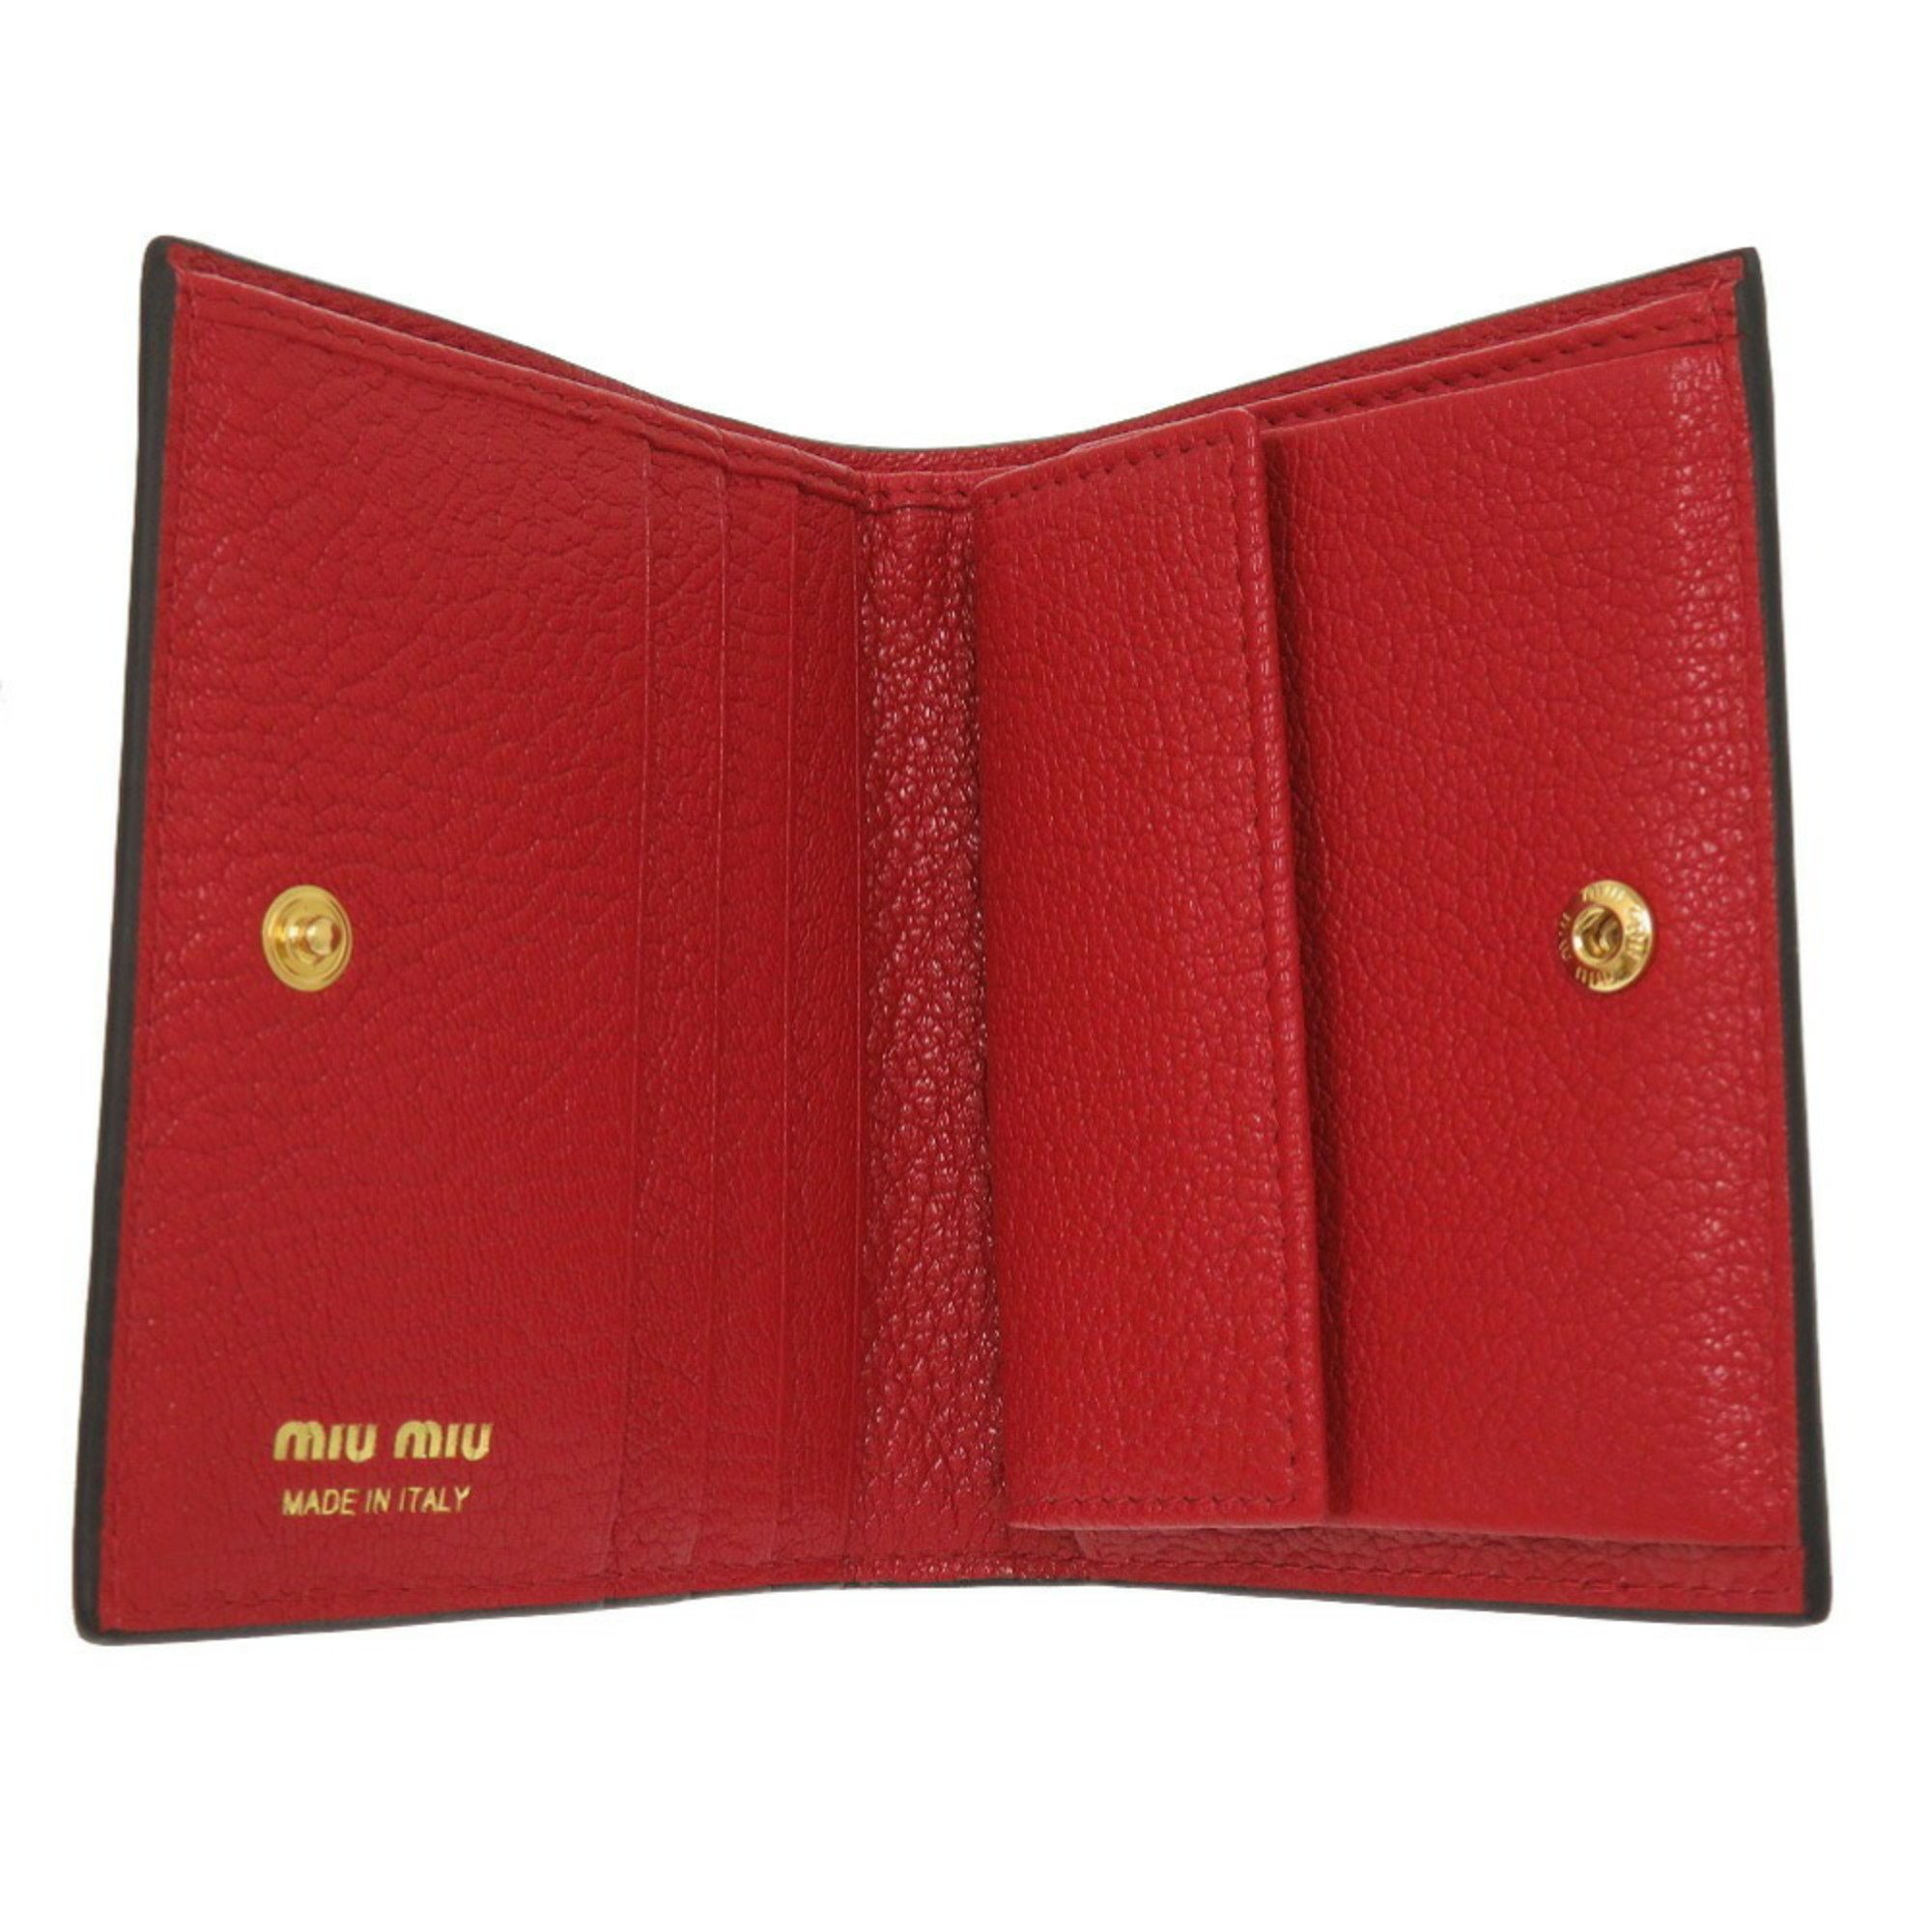 Miu Miu Miu Madras Jacquard 5MV204 Leather Canvas Red Bi-fold Wallet 0211 MIUMIU